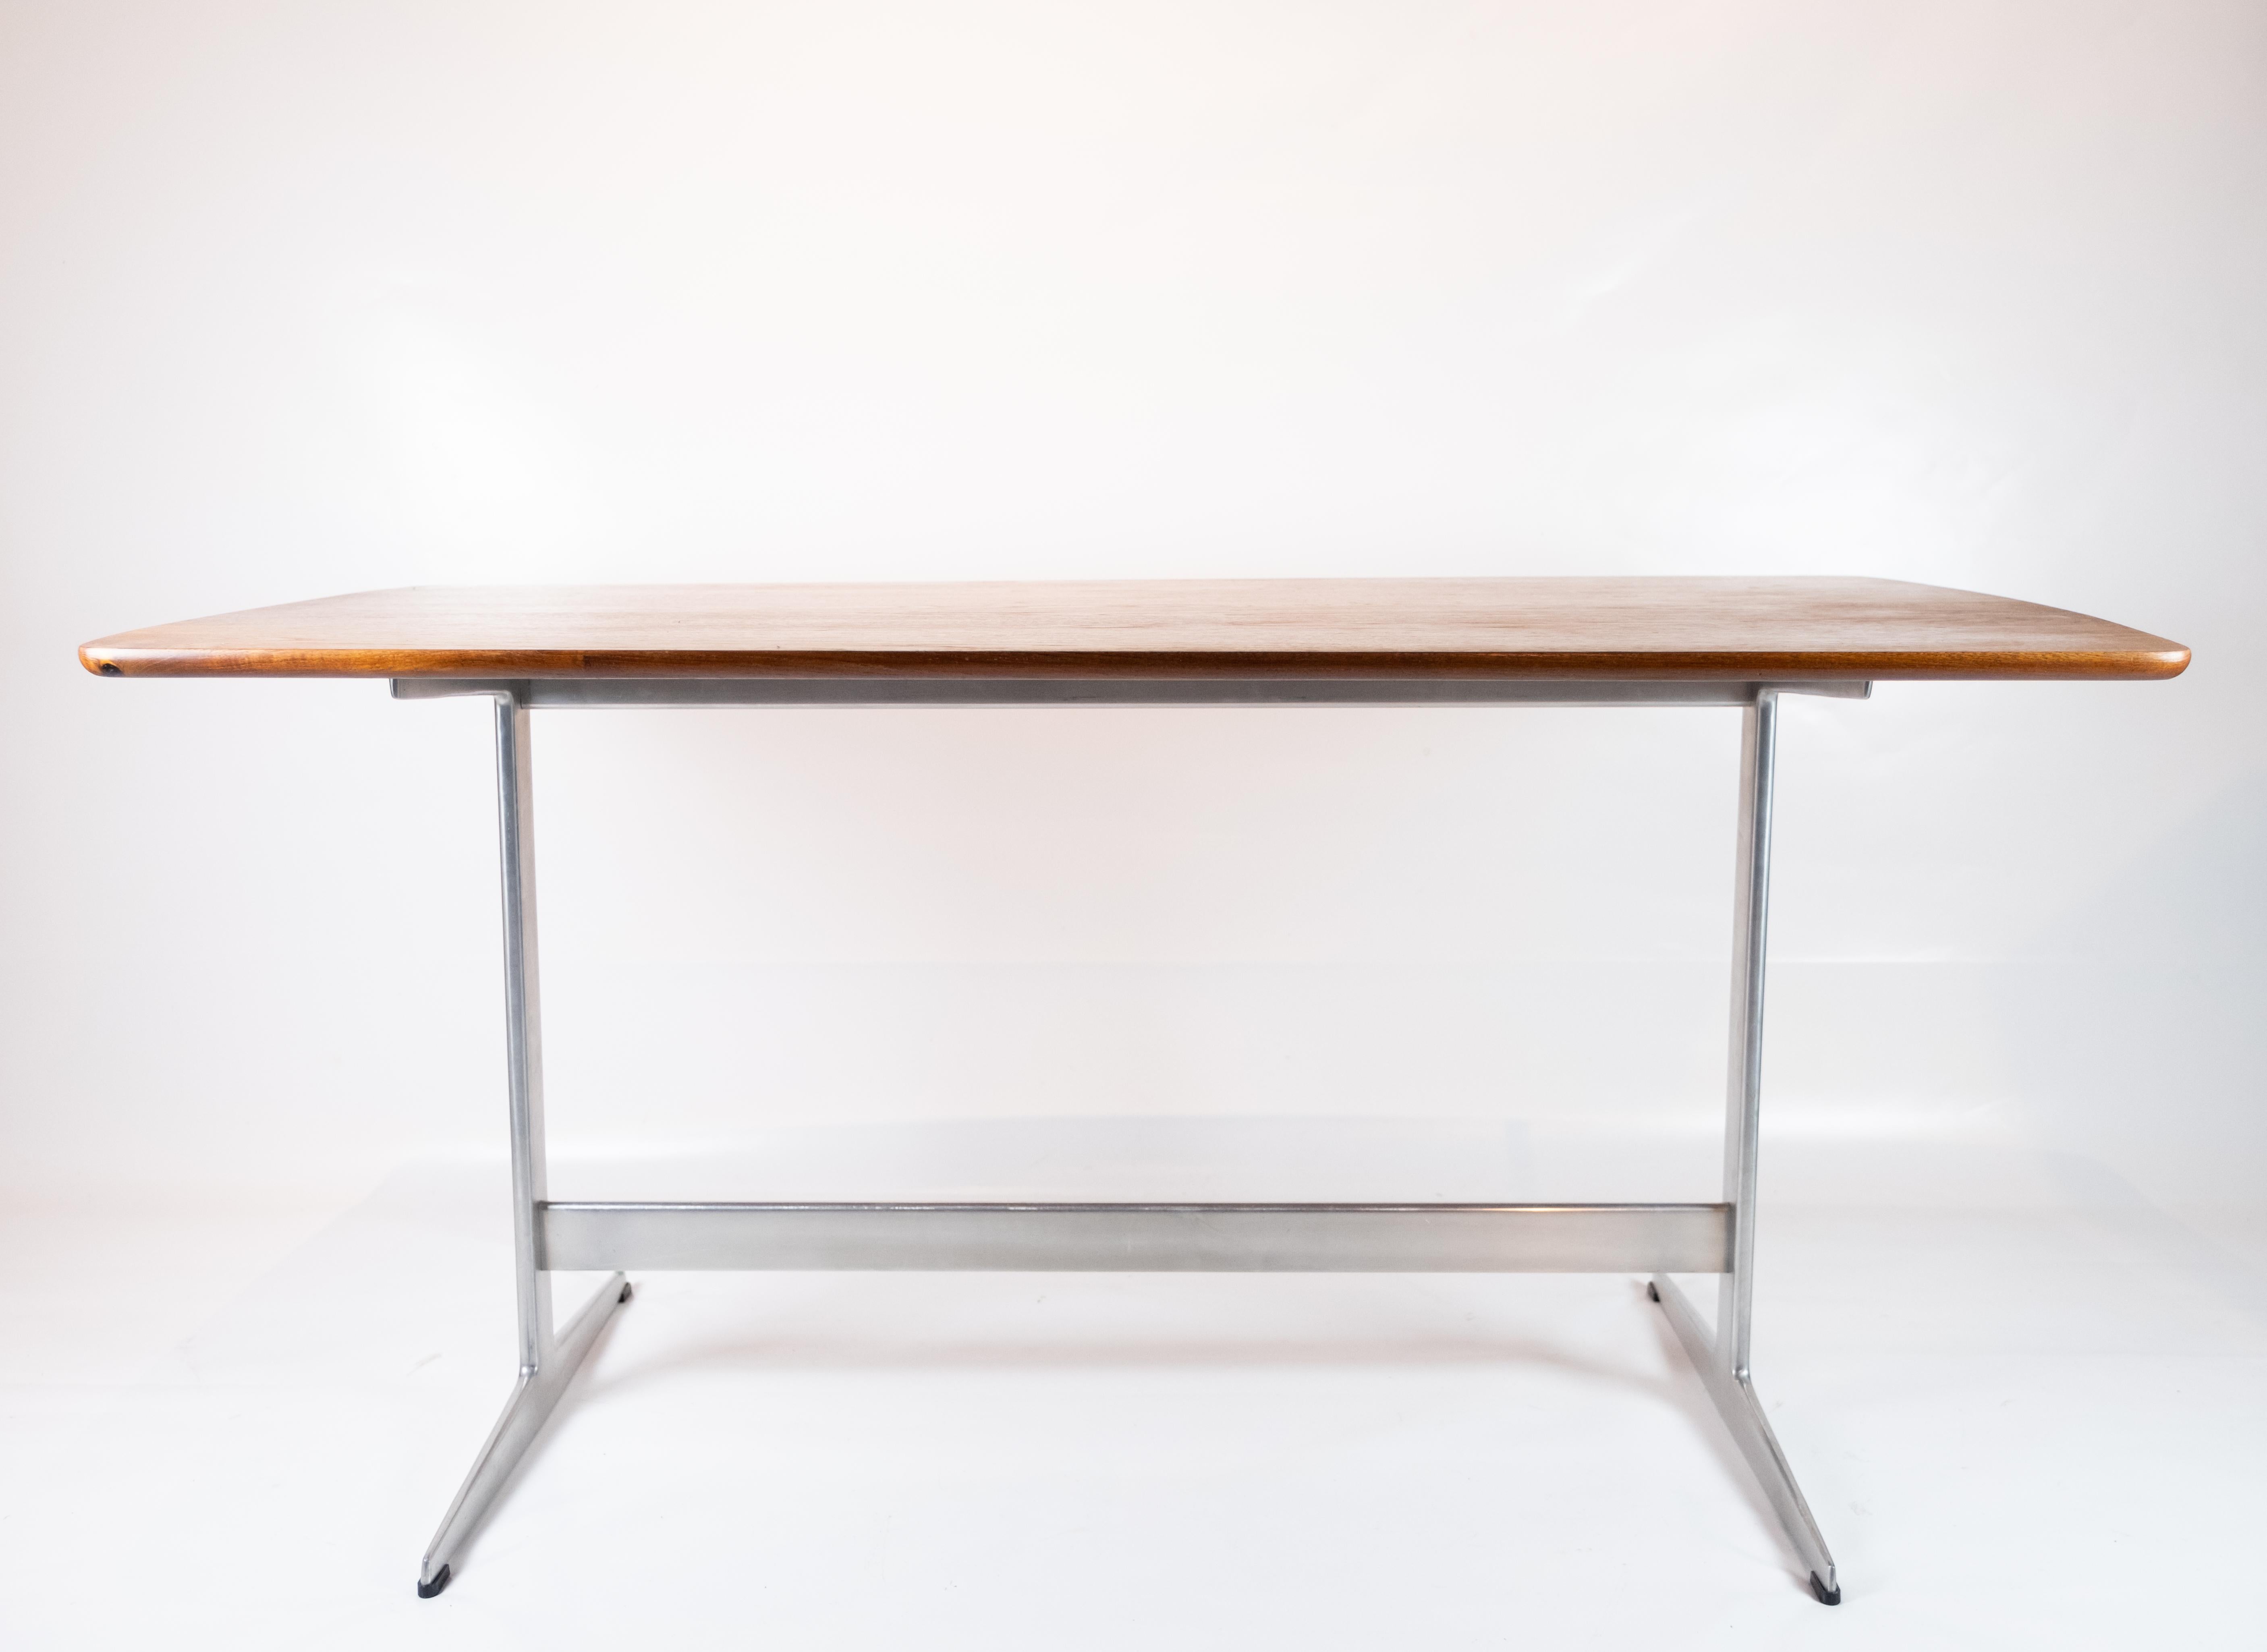 Table de salle à manger Shakers en teck et structure en métal conçue par Arne Jacobsen dans les années 1960. La table est en excellente condition vintage.
  